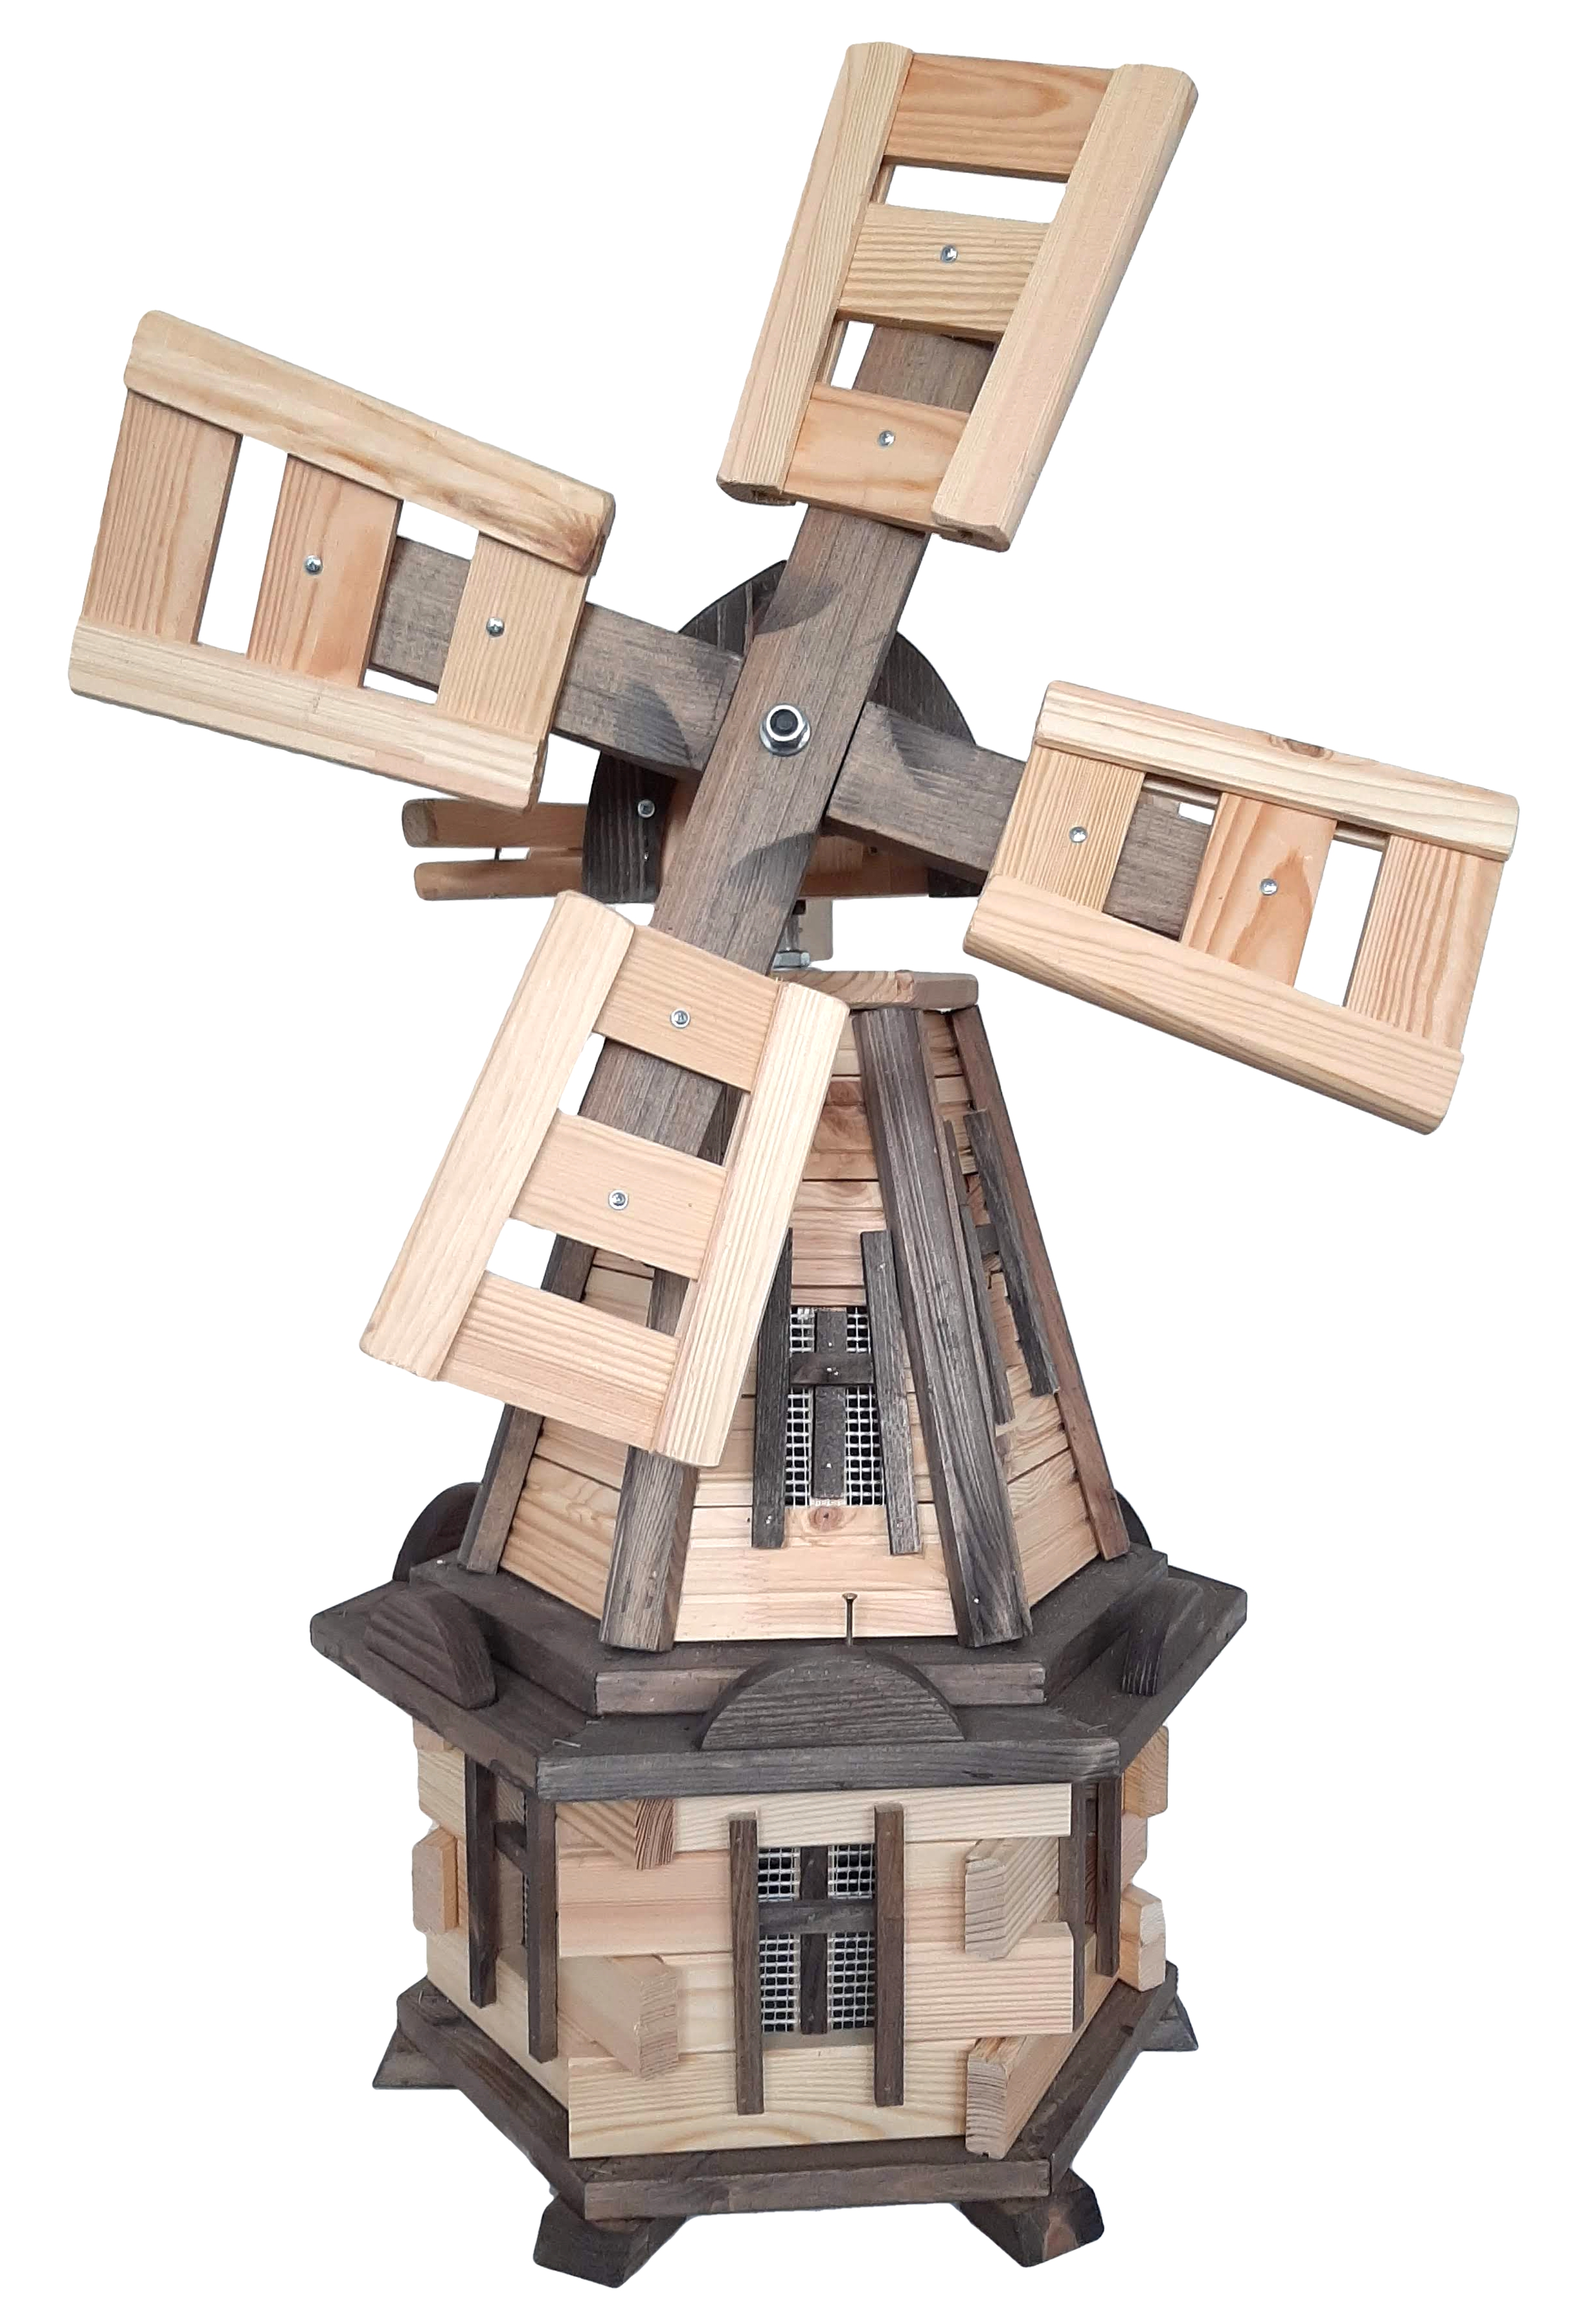 Drevený veterný mlyn záhradný, otočný, dekoračný 170 cm